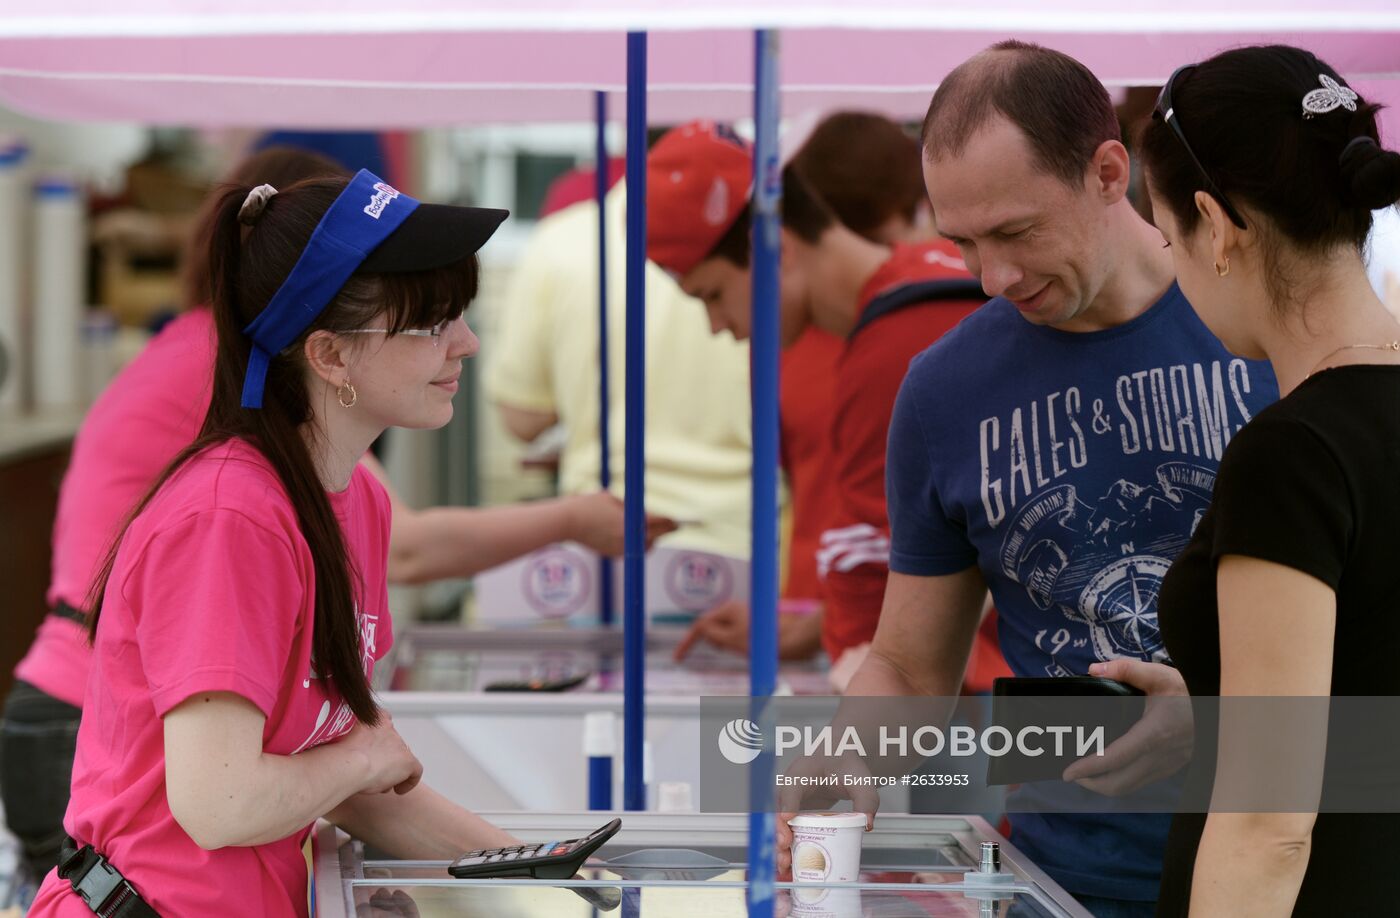 "Праздник мороженого-2015" в Москве